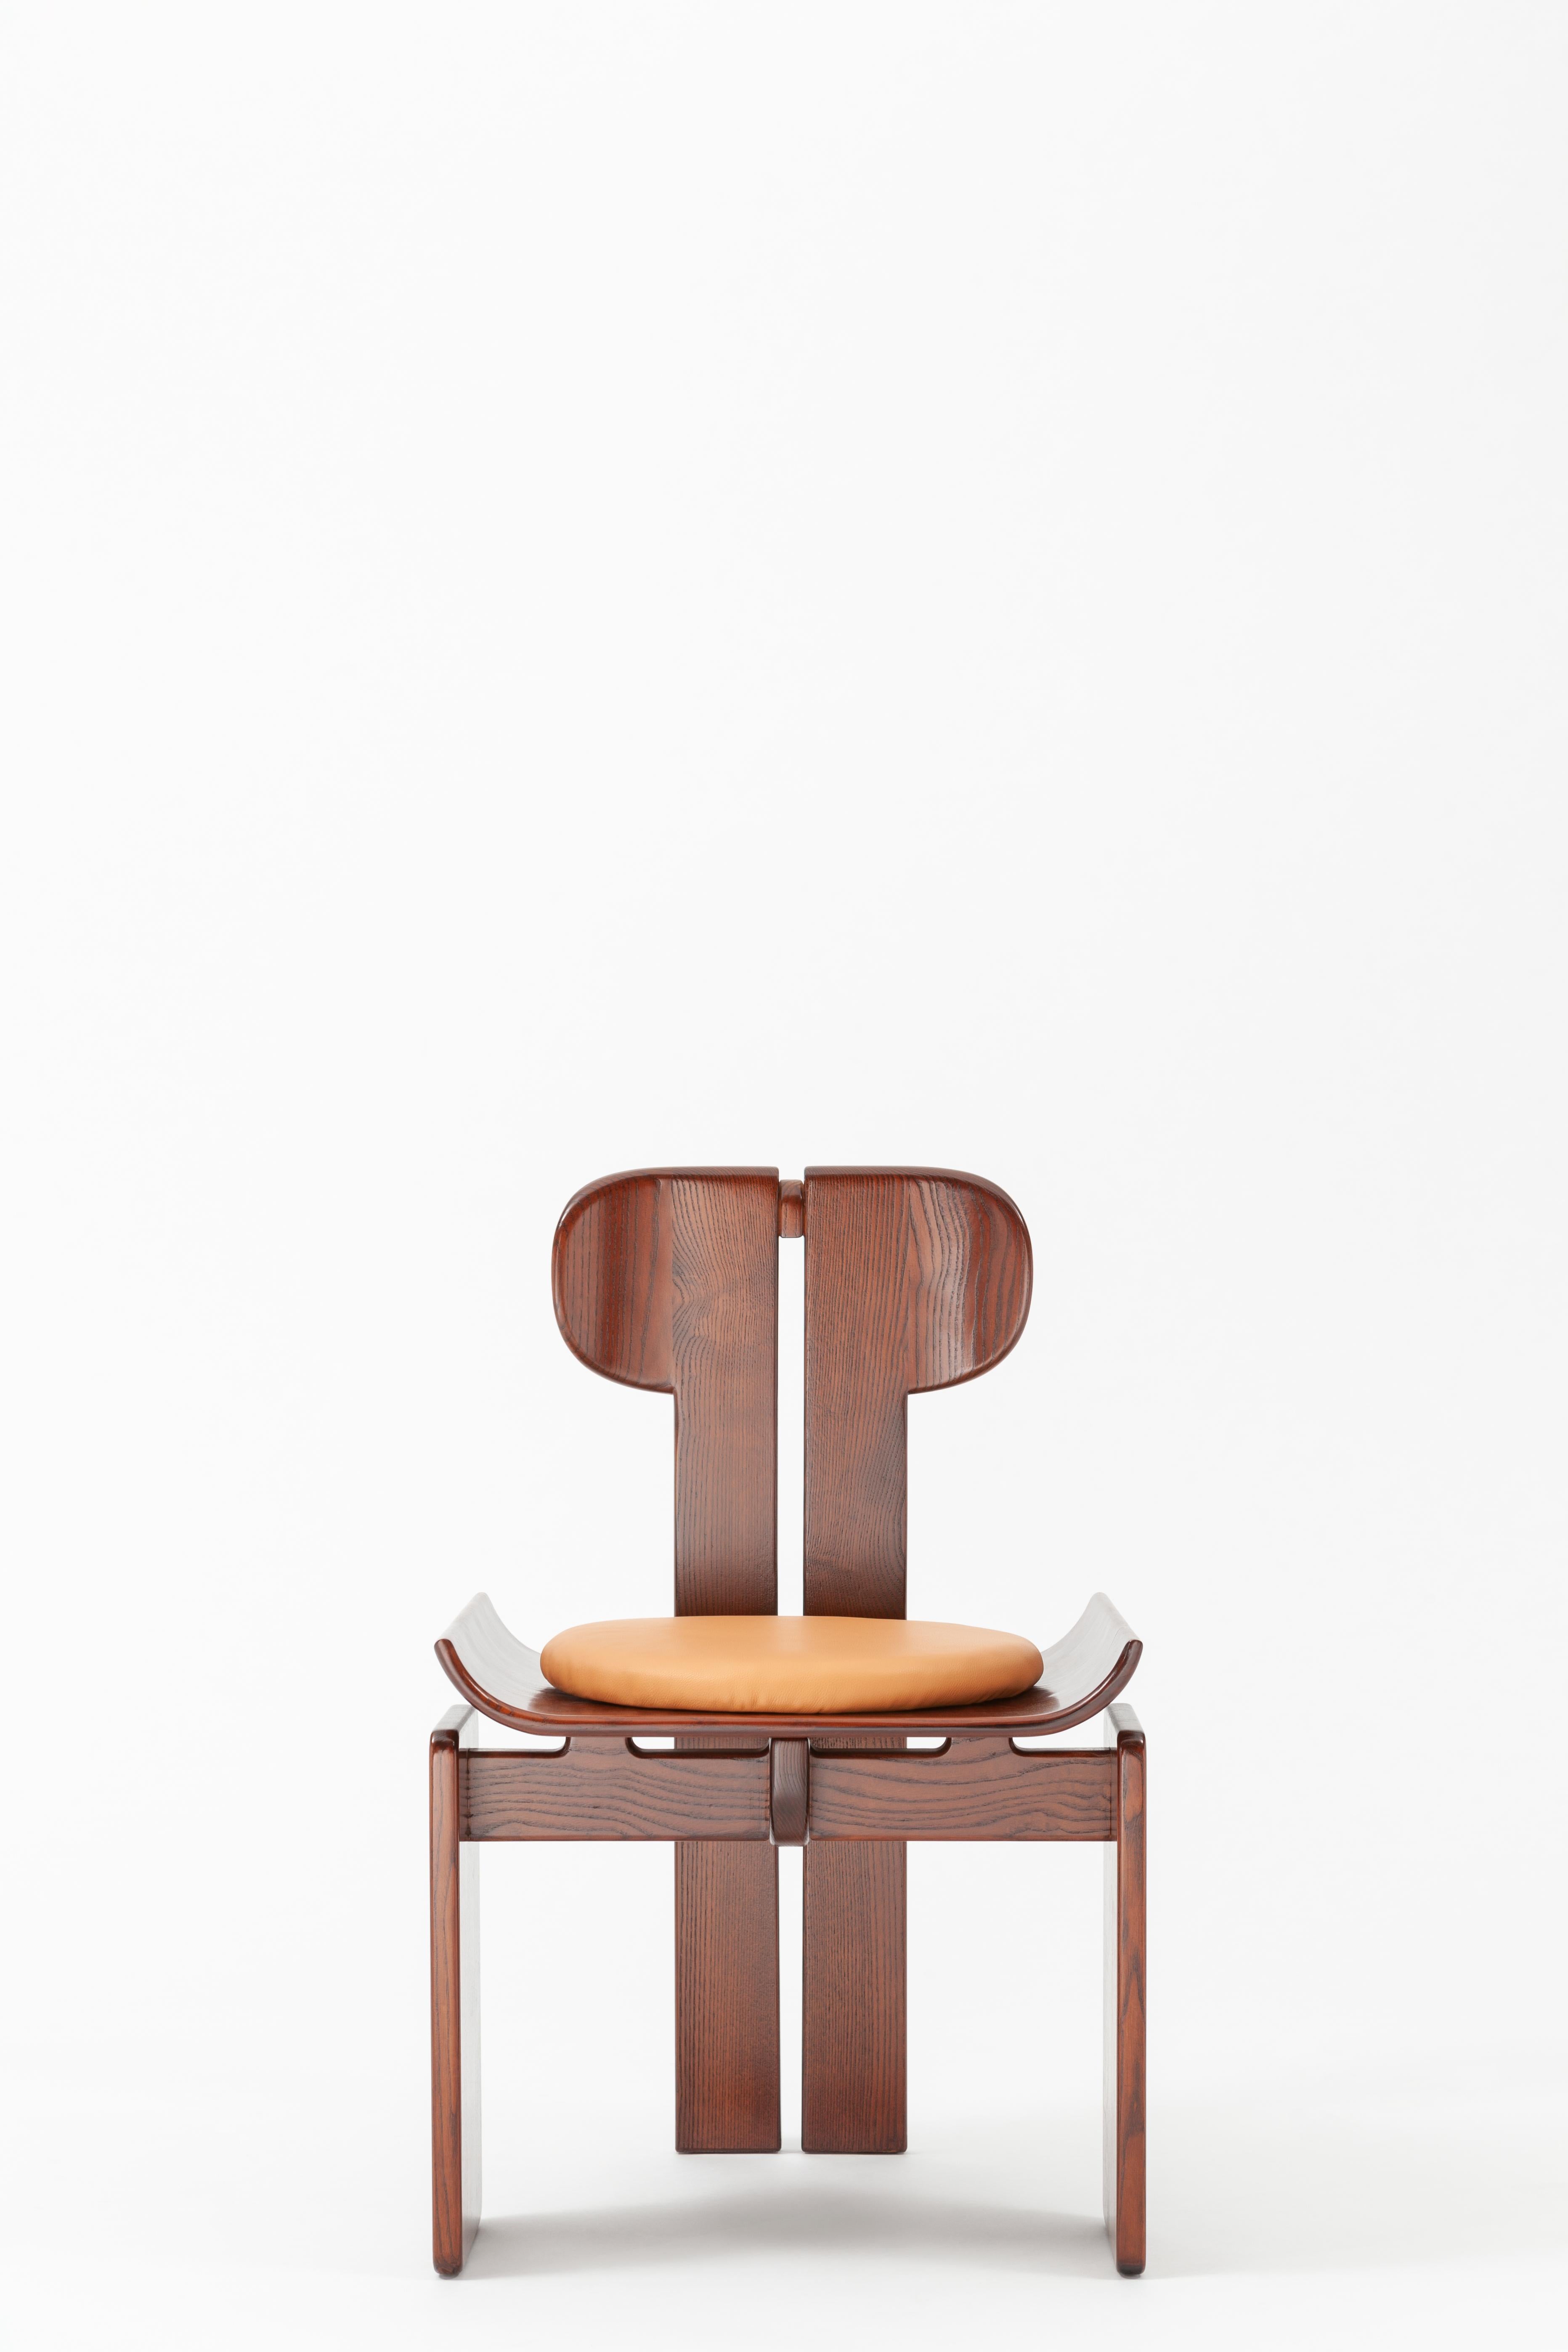 Chaise de salle à manger Alea de SEM
Dimensions : D53 x W50 x H83 cm
MATERIAL : Hêtre laqué mat avec coussin en cuir.

Alea 